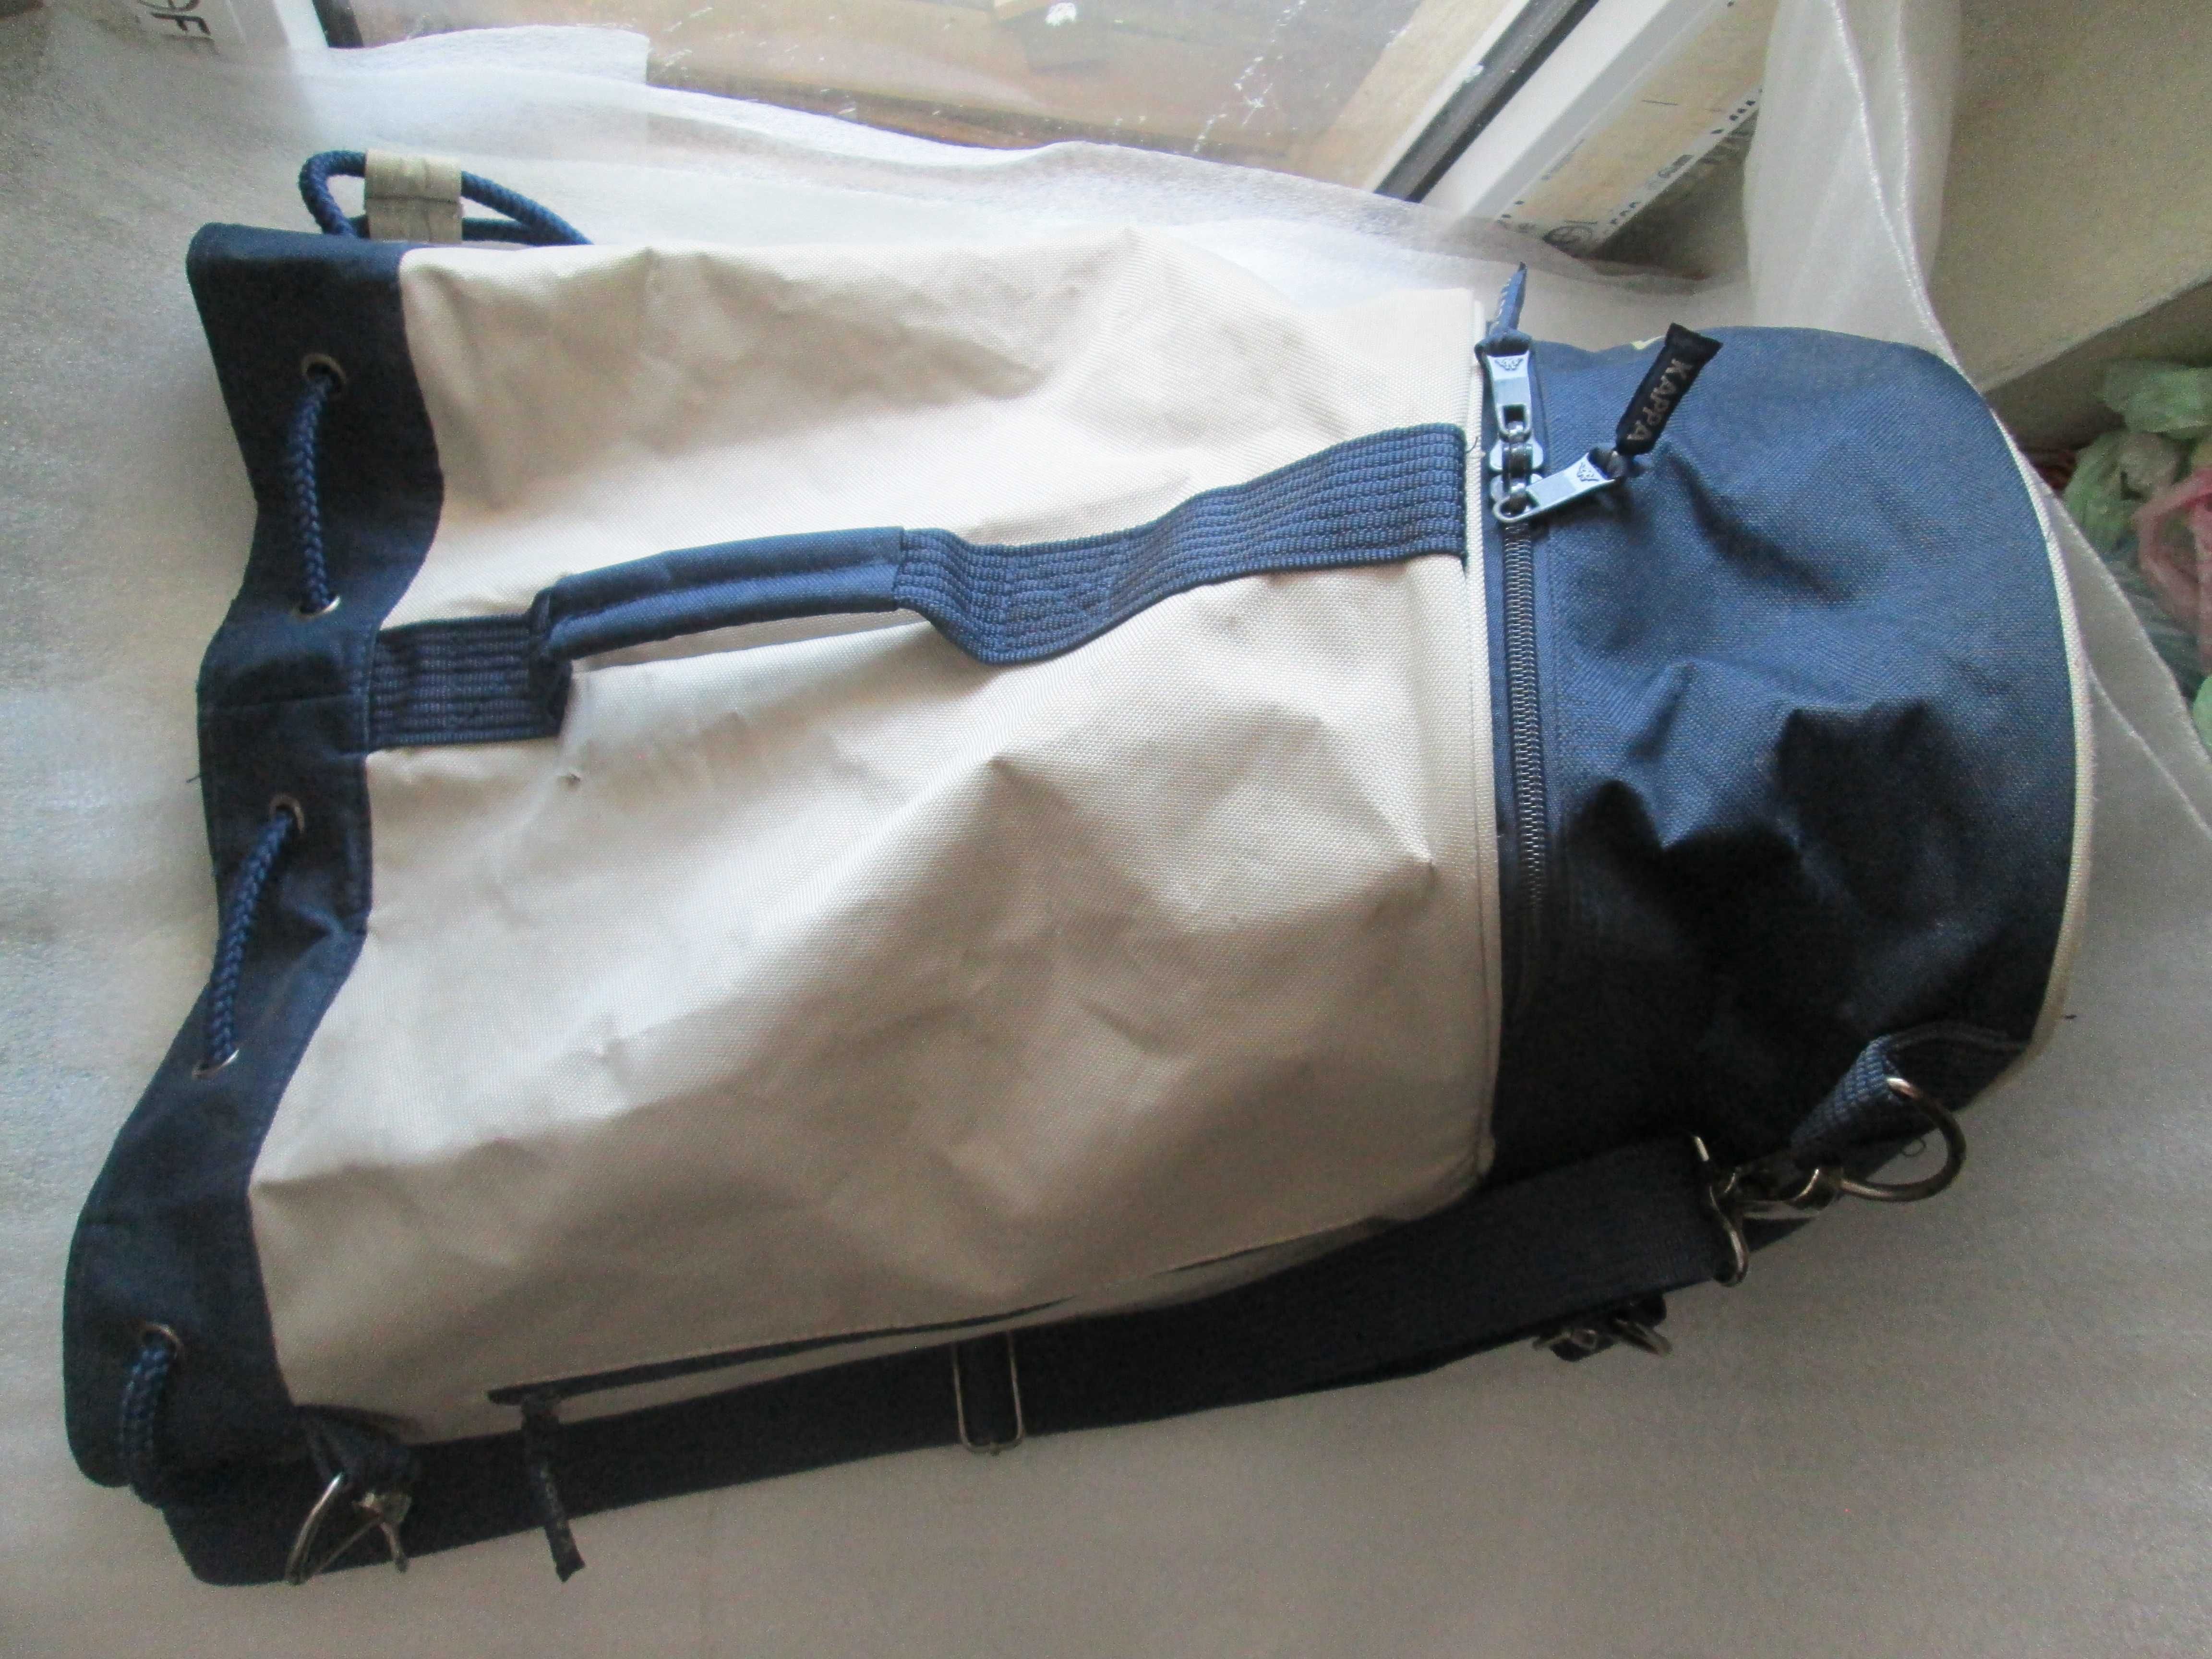 Рюкзак KAPPA 45L, об'єм 45 л, розміри (ВхШхГ) 53х34х26 см, не новий